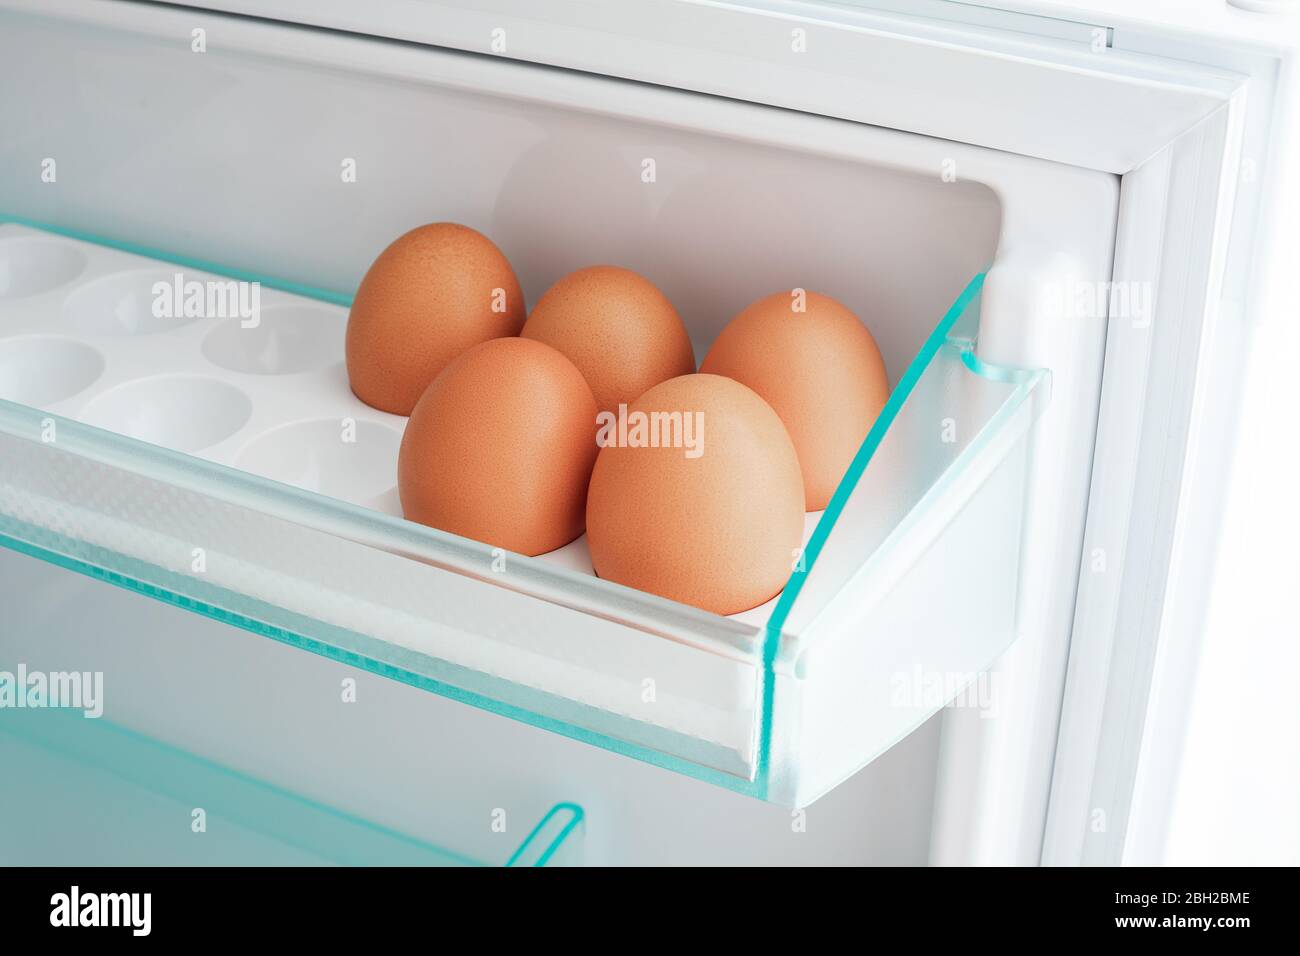 Uova in frigorifero. Concetto di vita sana. Foto Stock